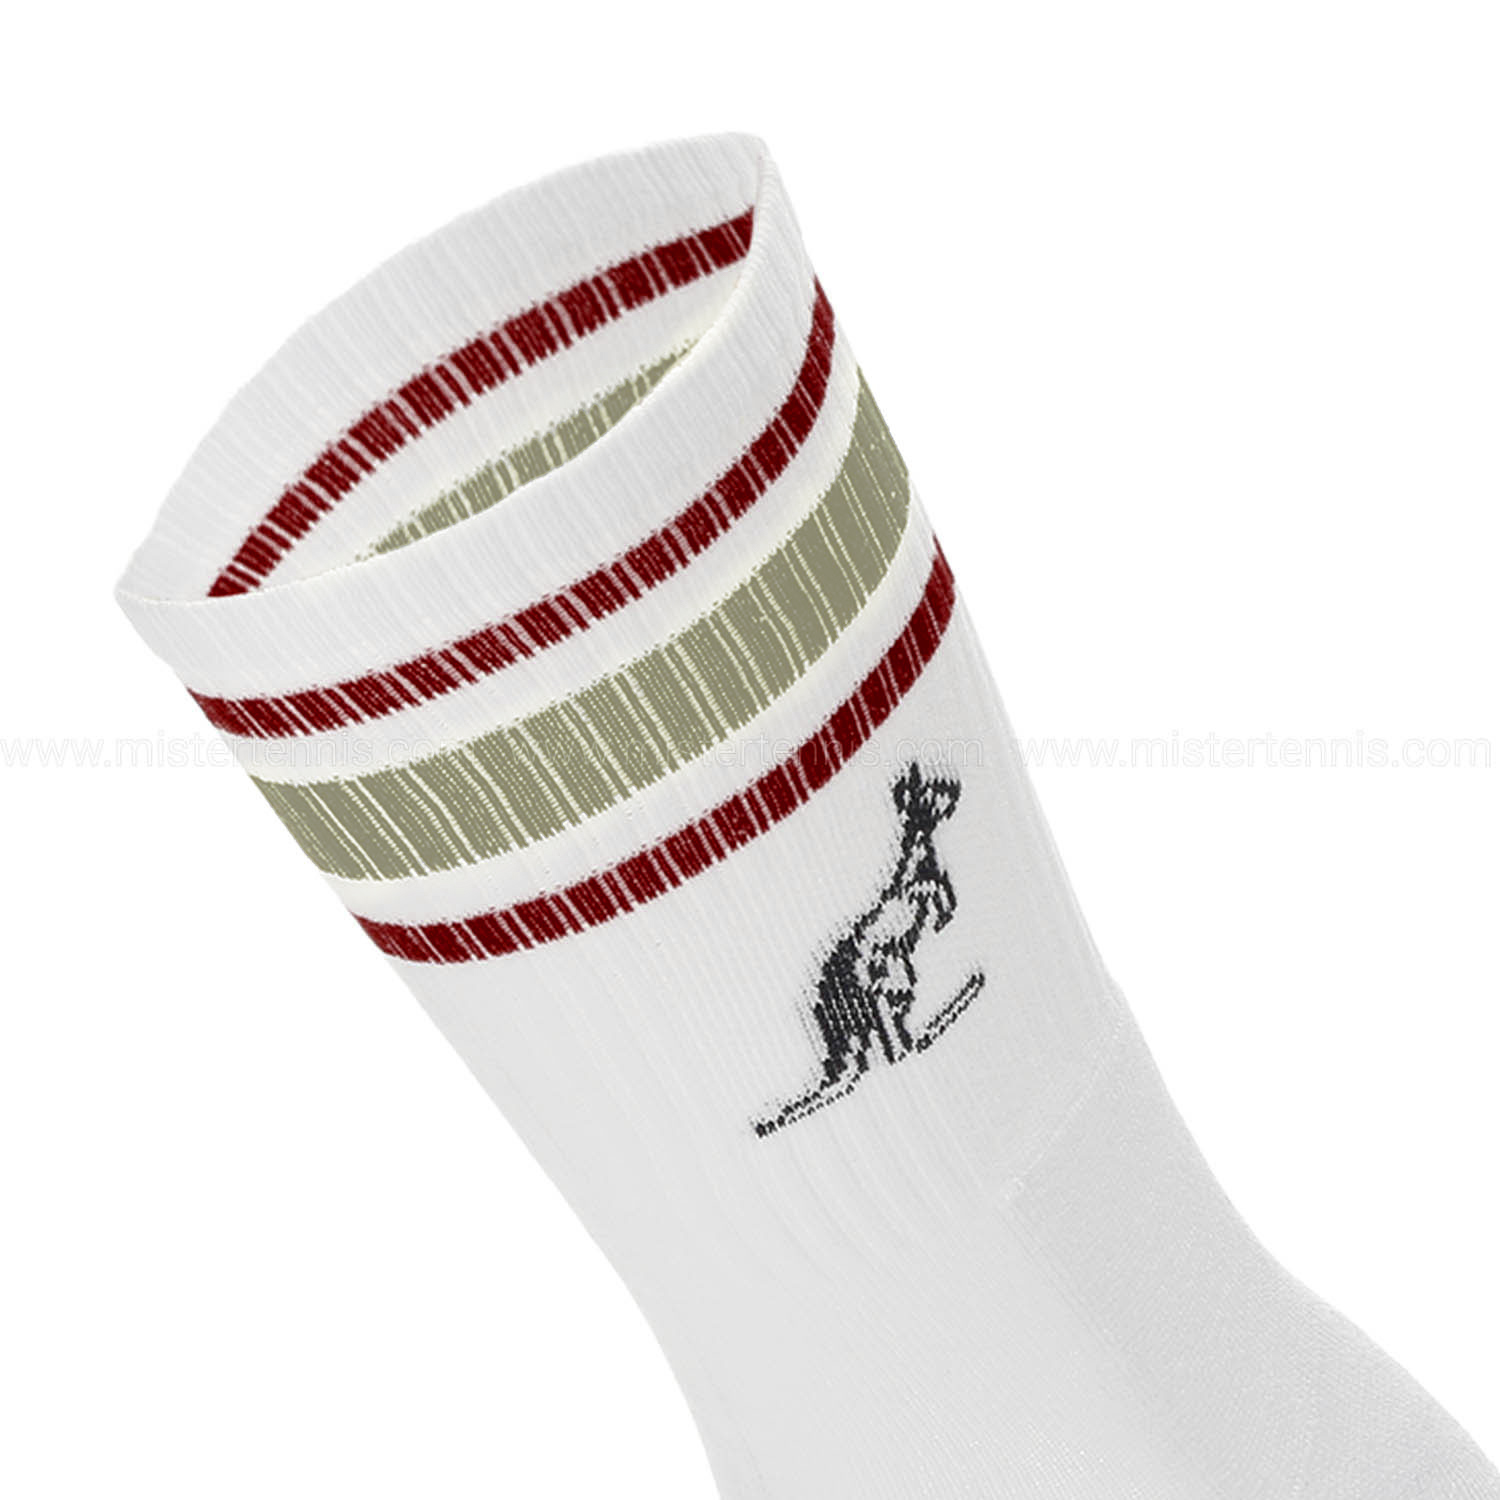 Australian Stripes Calcetines - White/Multi Color